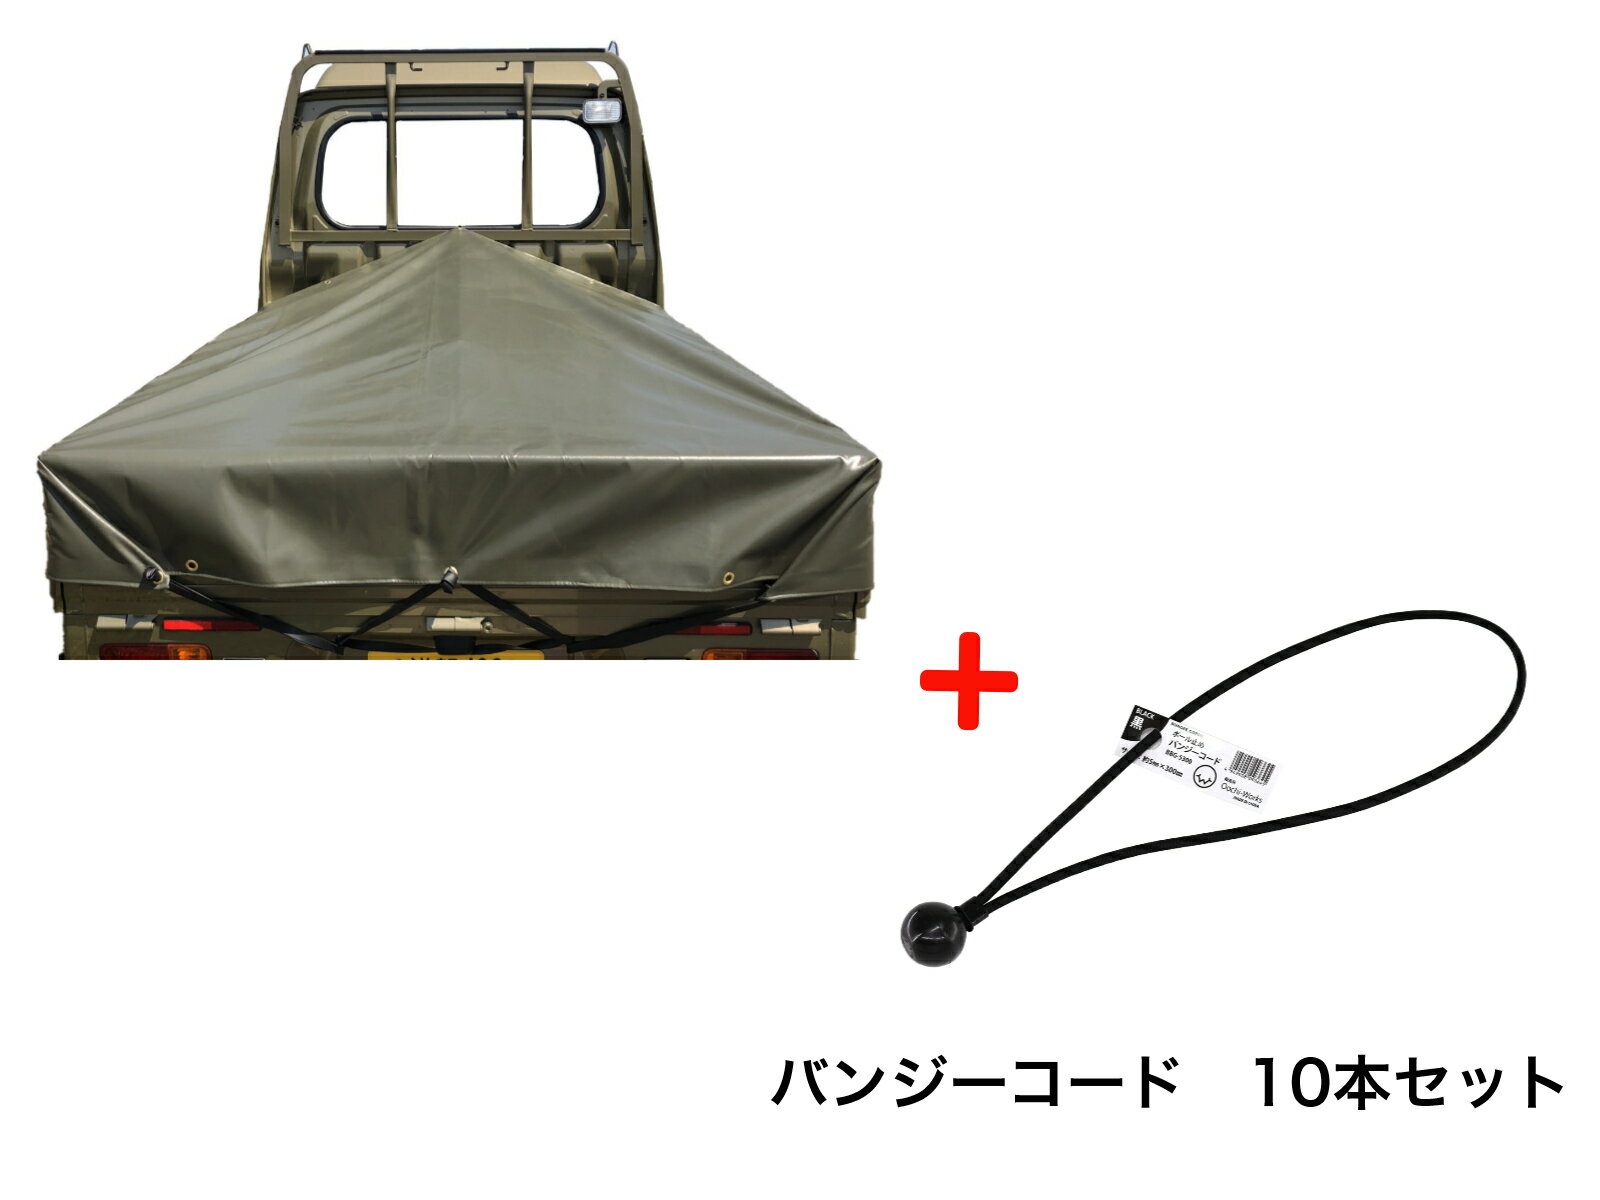 バンジーコード 10本付 ハイゼットジャンボシート スロープ型 シート単品 OD 国防色 (前部)2.0m・(後部)1.9m×(長さ)1.93m 台形シート